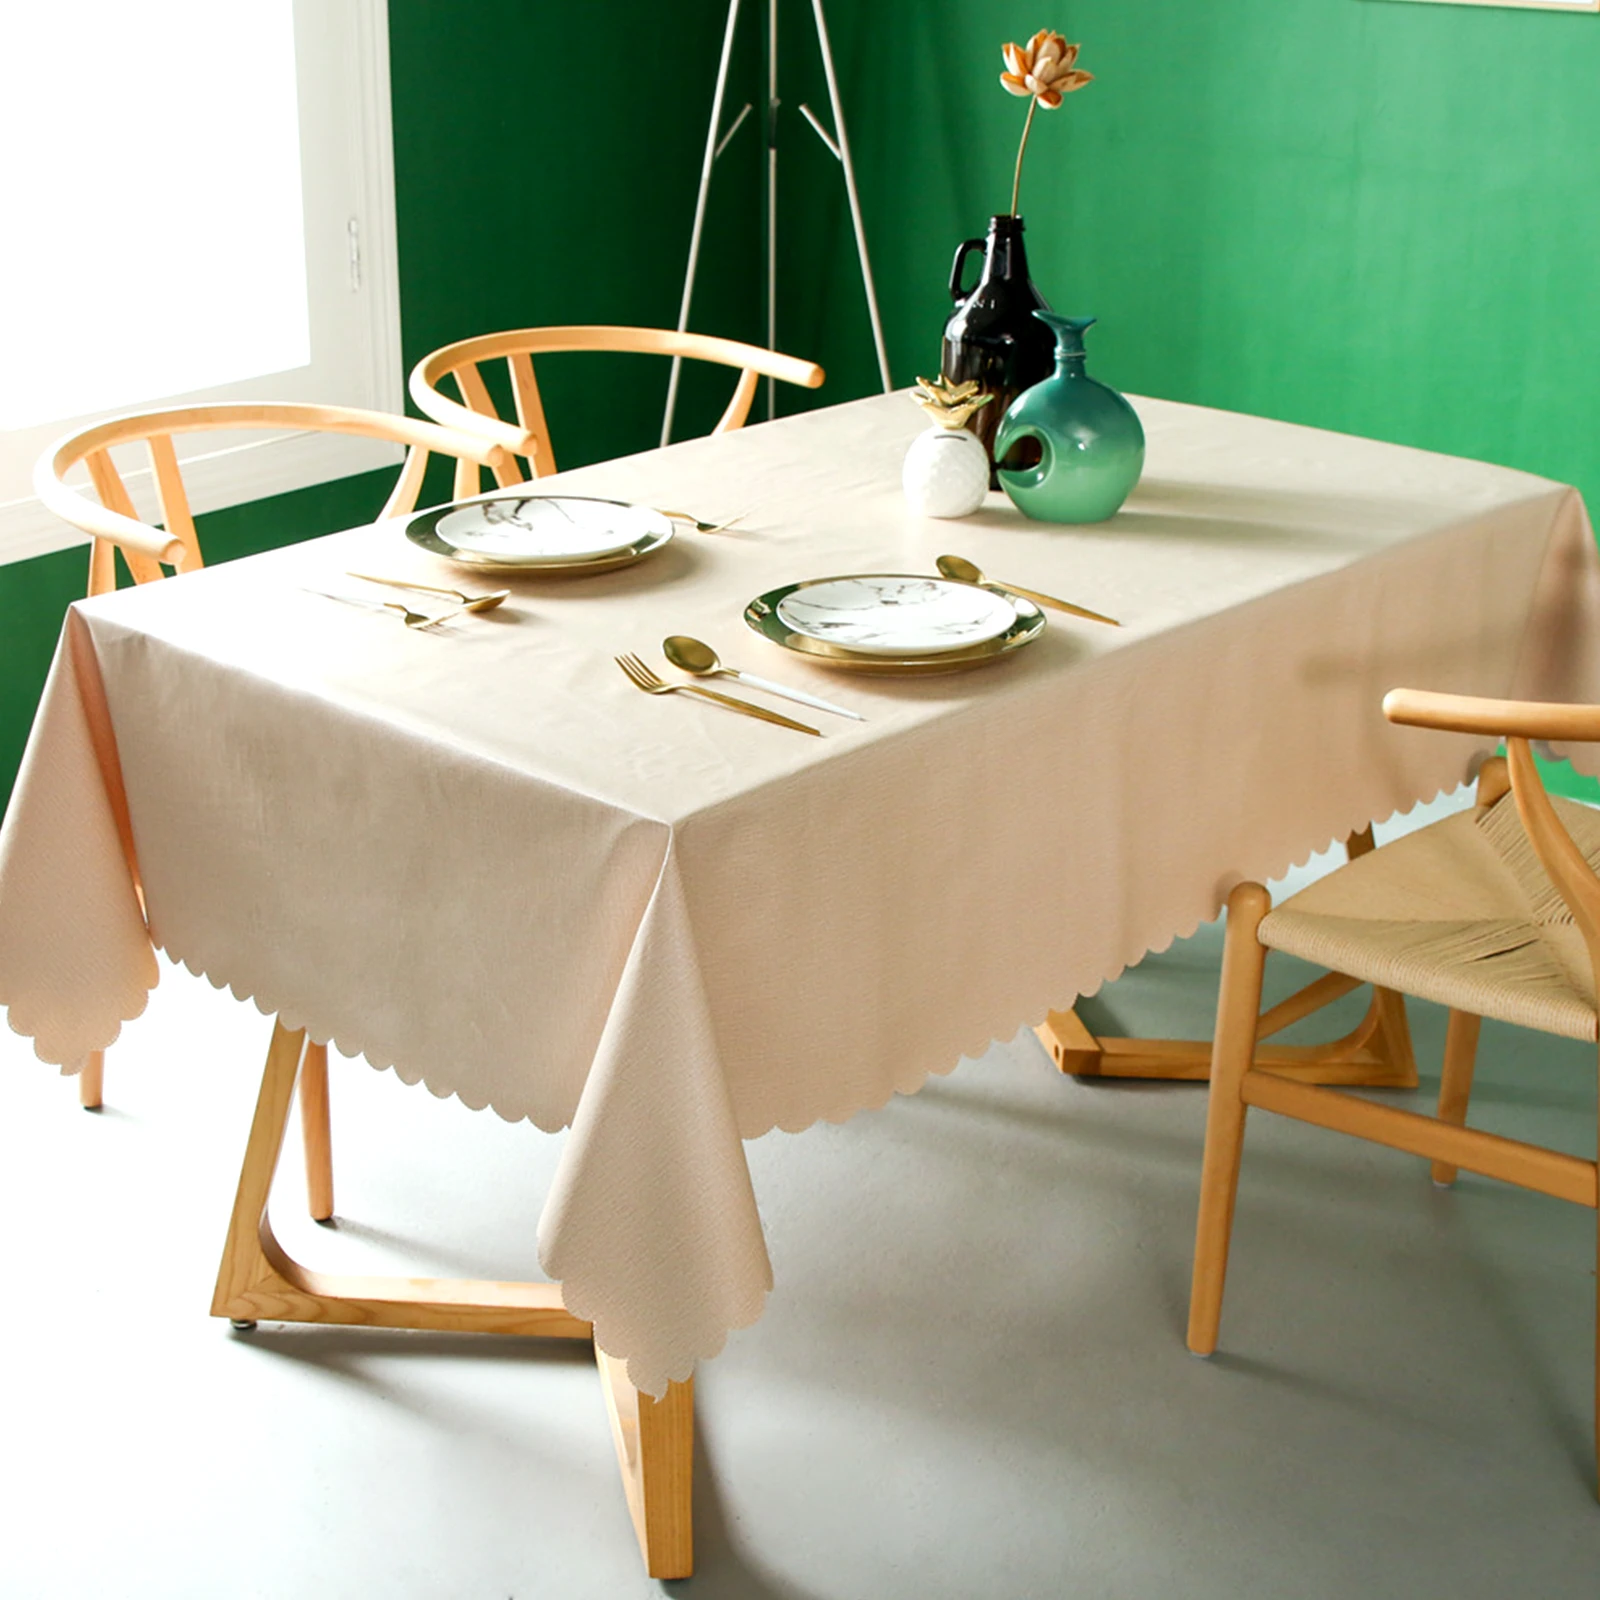 ПВХ сплошной цвет прямоугольной скатерти скатерть для обеденного стола Накладка для дома свадьбы питание пикника столовая посуда домашний текстиль